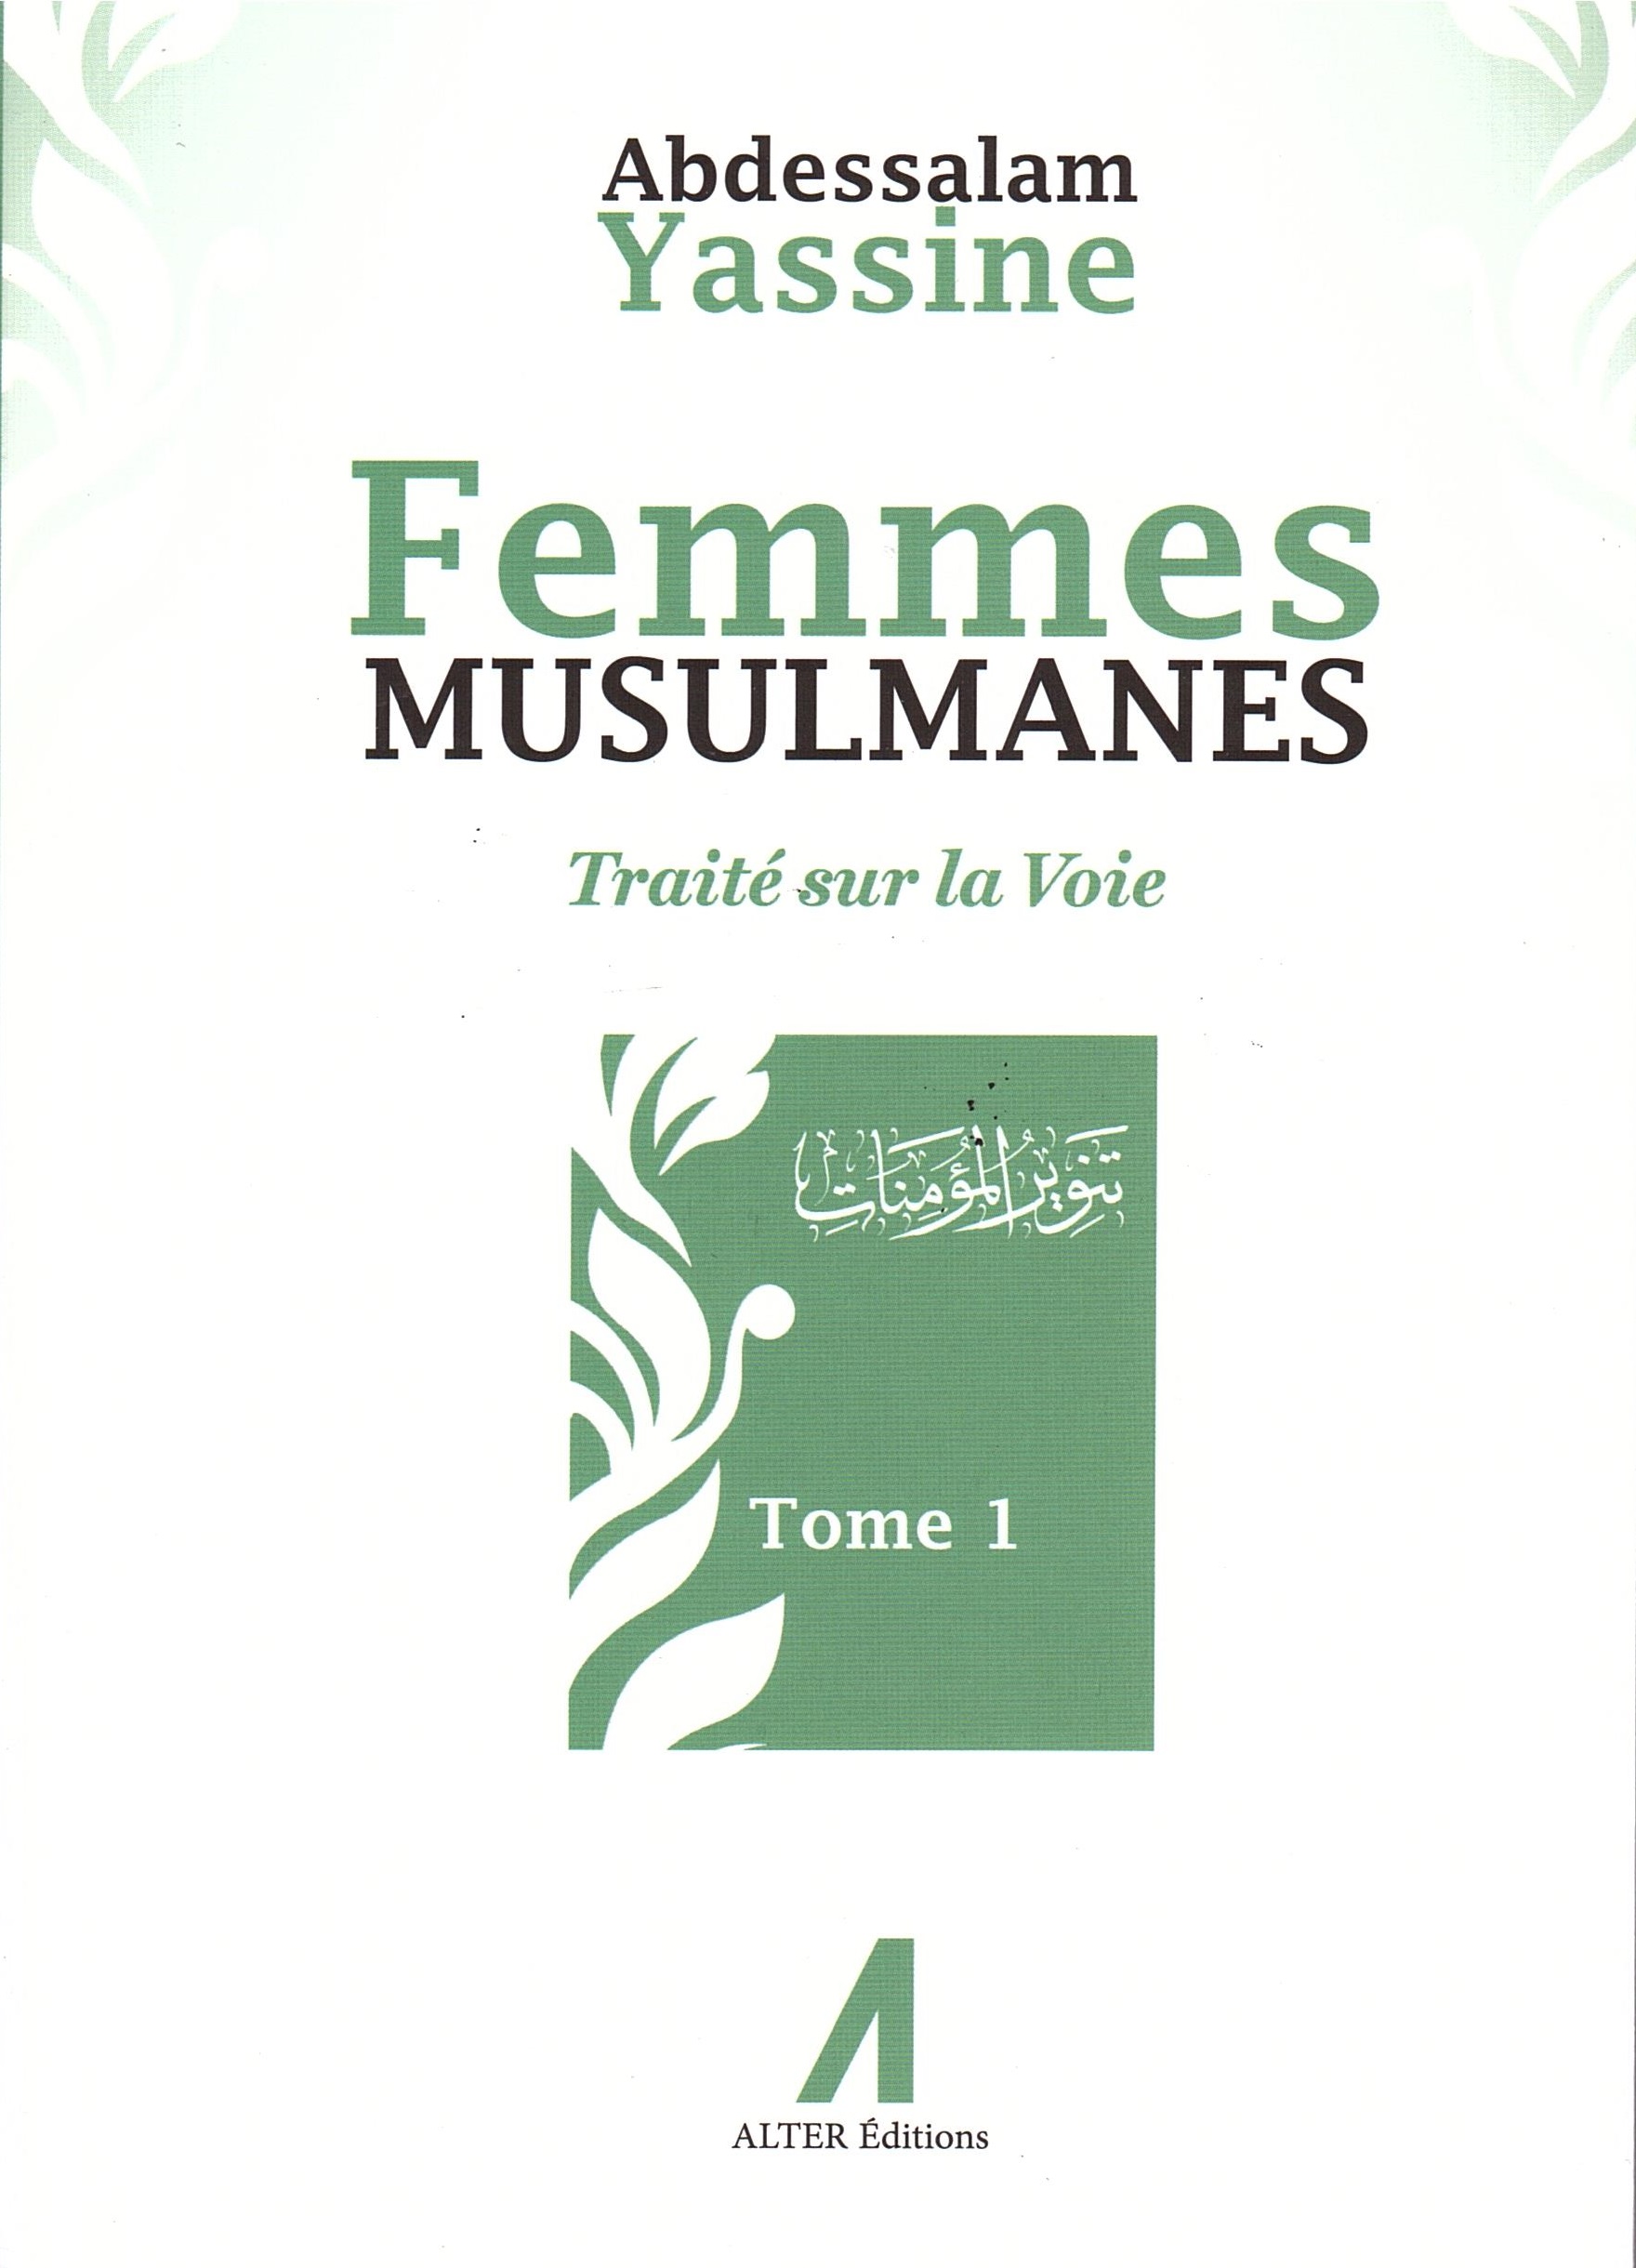 Femmes musulmanes - Traité sur la Voie - Tome 1